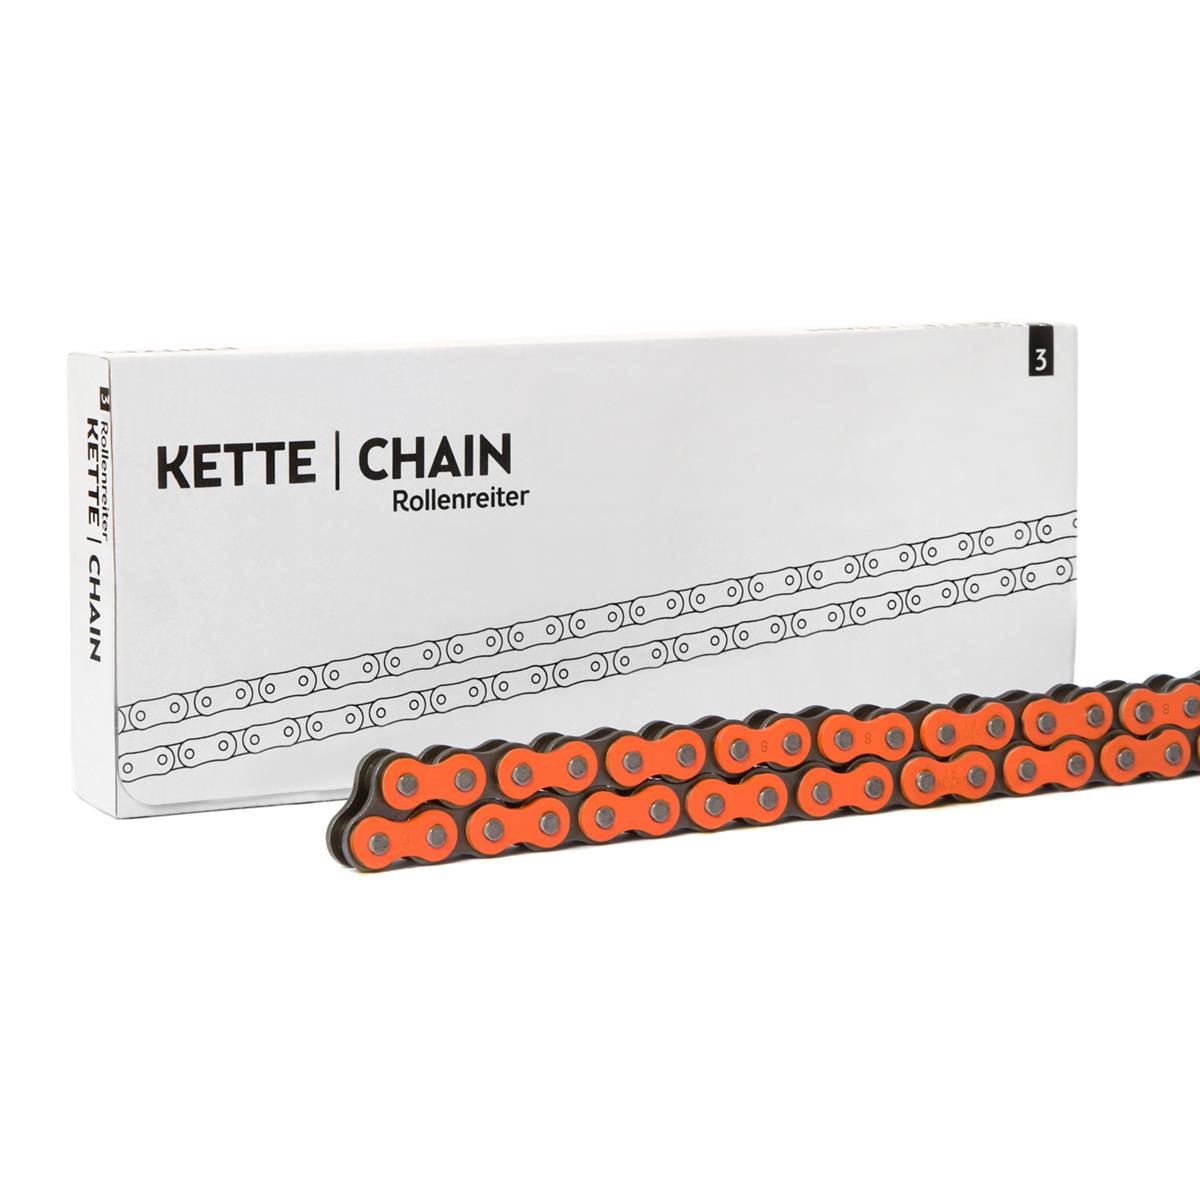 FRITZEL Chain Rollenreiter 520 Pitch, Super Reinforced, Orange